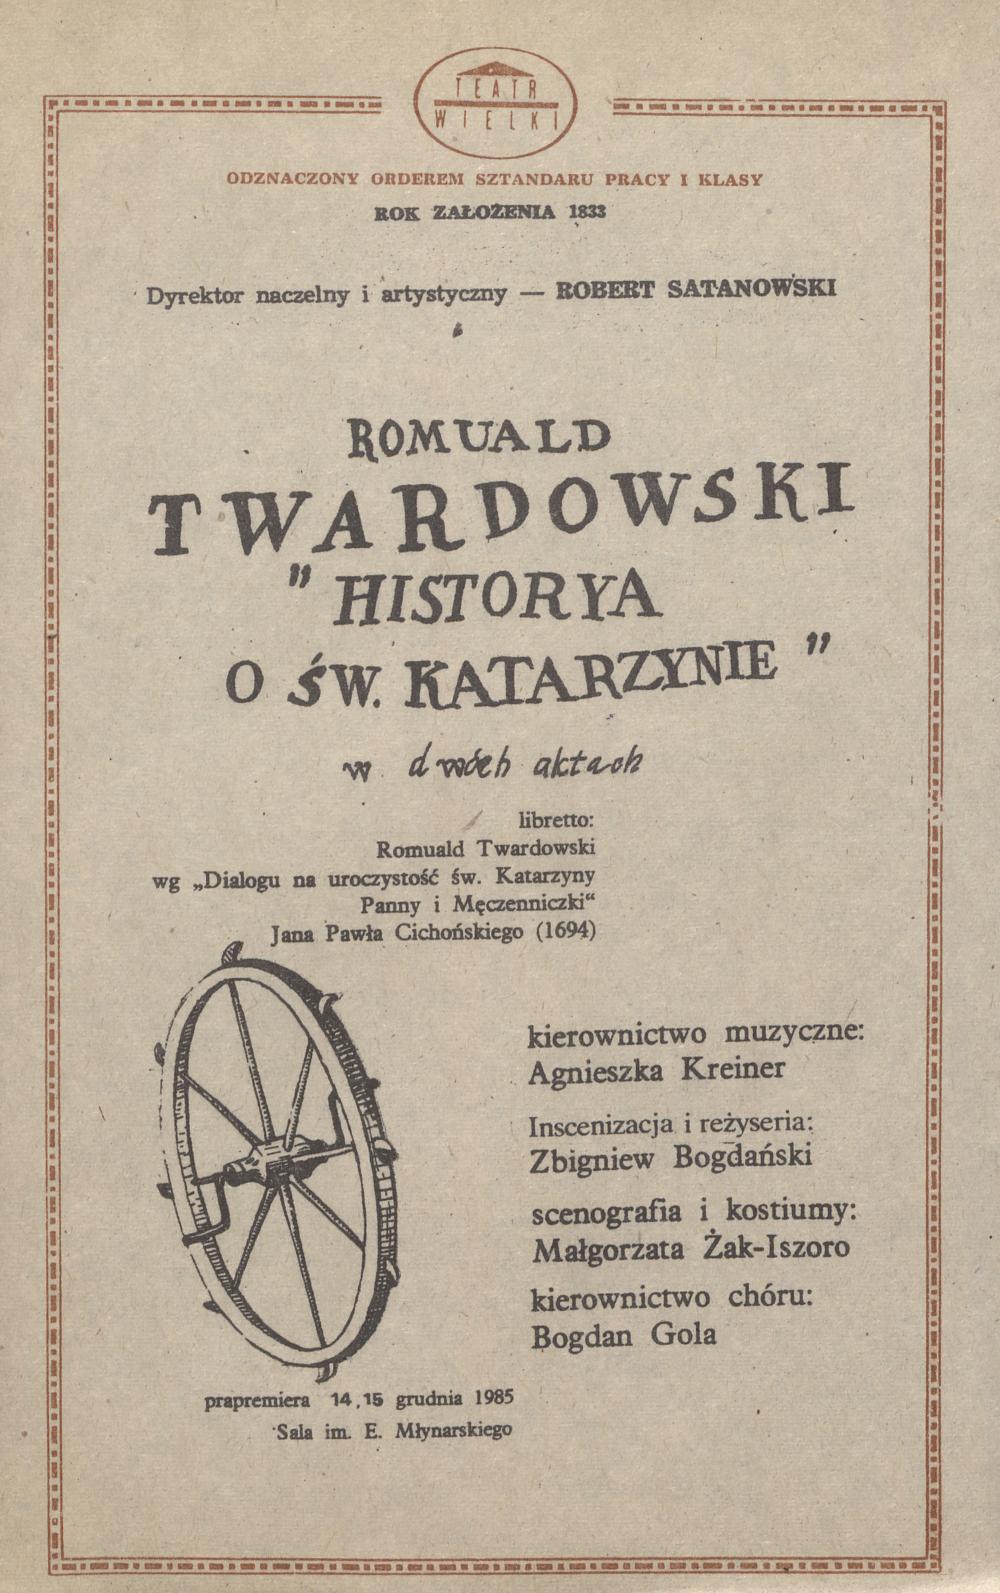 Wkładka obsadowa„Historya o św. Katarzynie” Romuald Twardowski 17-12-1985